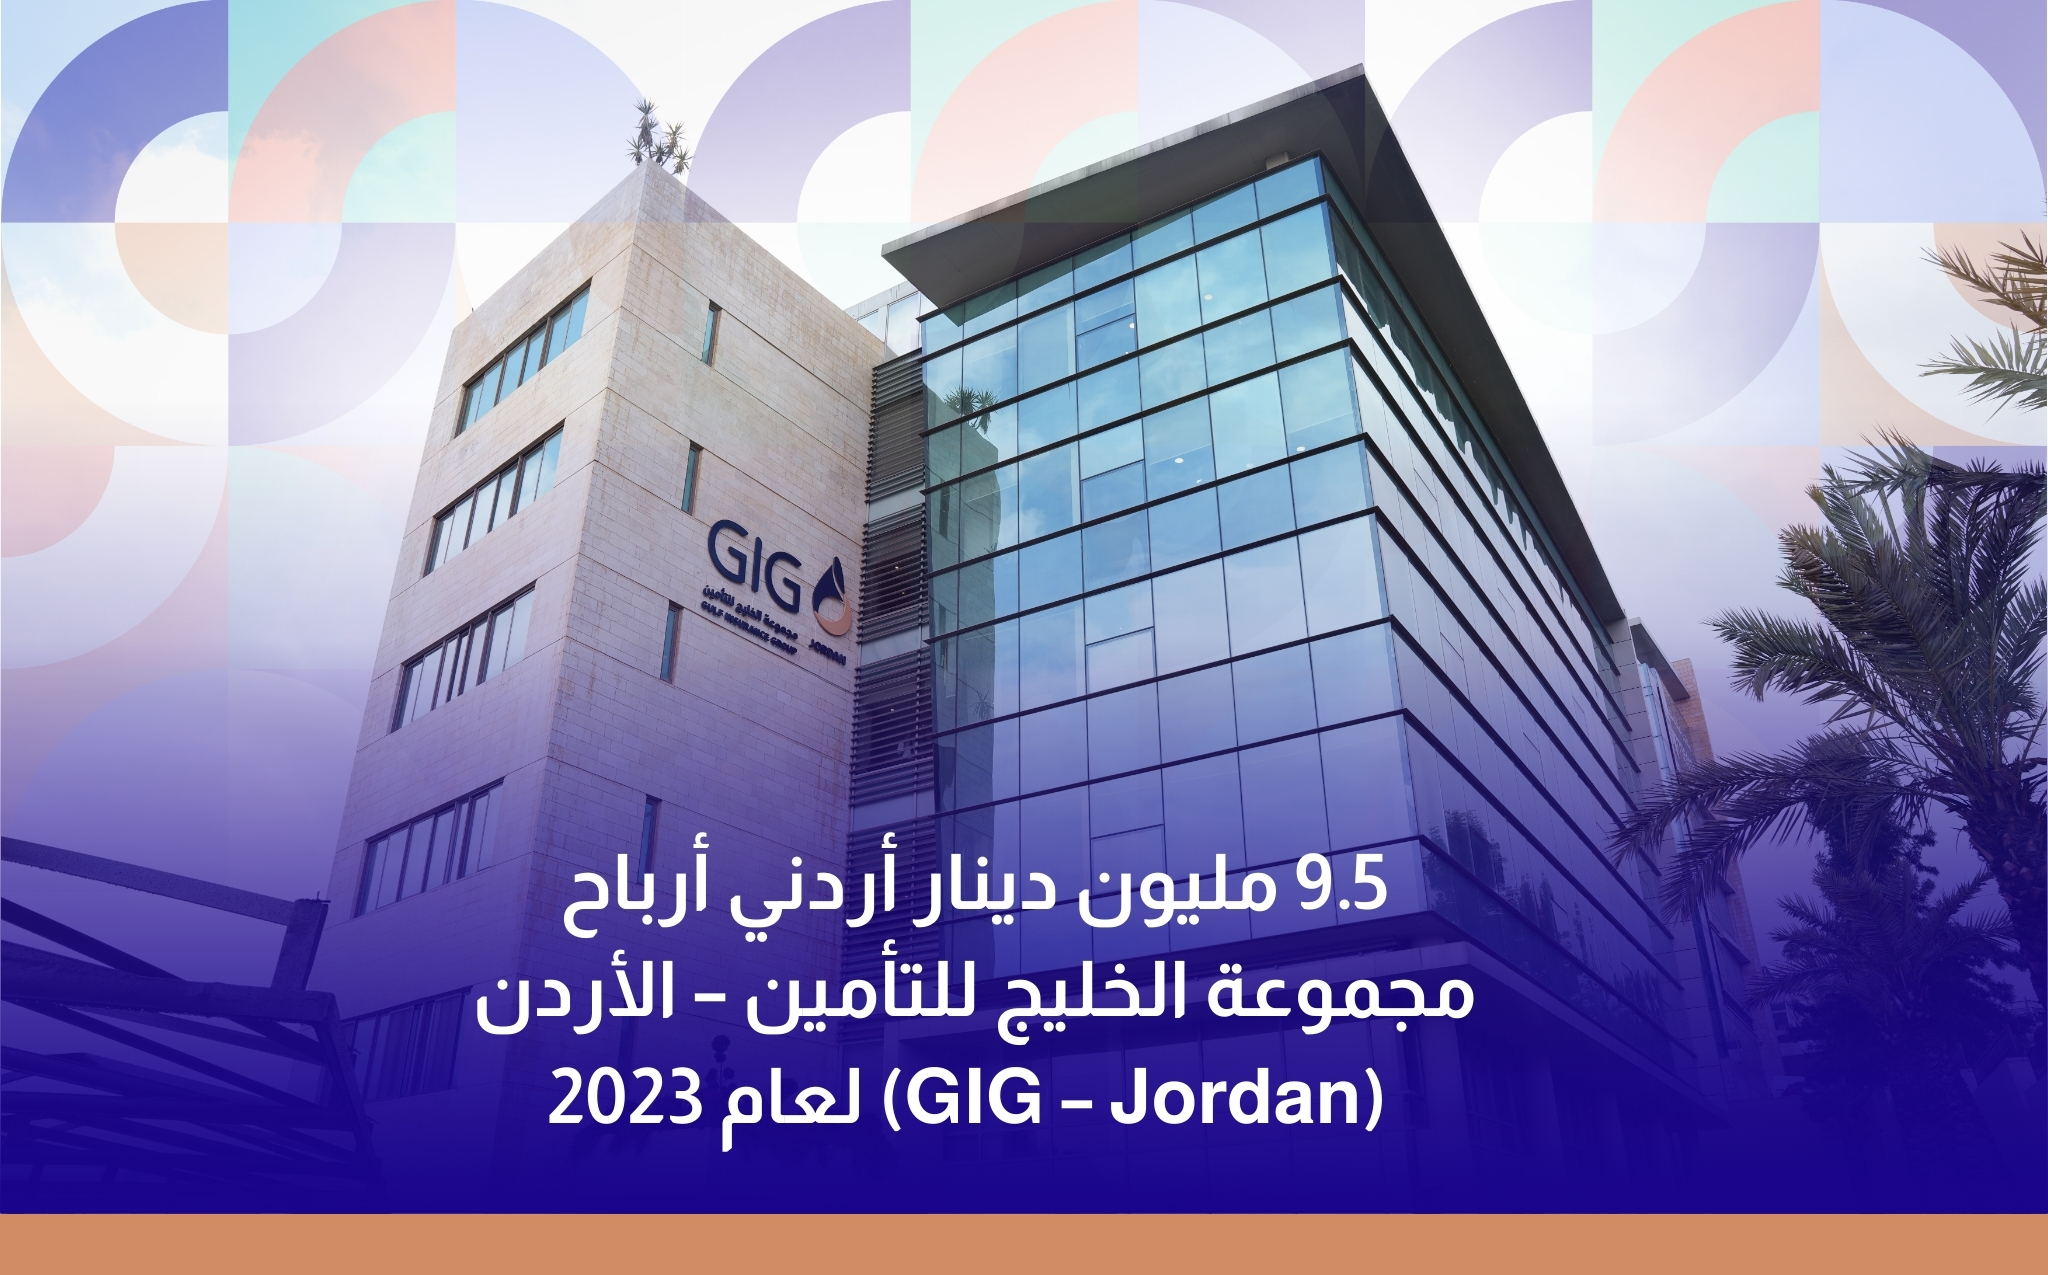 9.5 مليون دينار أردني أرباح مجموعة الخليج للتأمين – الأردن (GIG – Jordan) لعام 2023